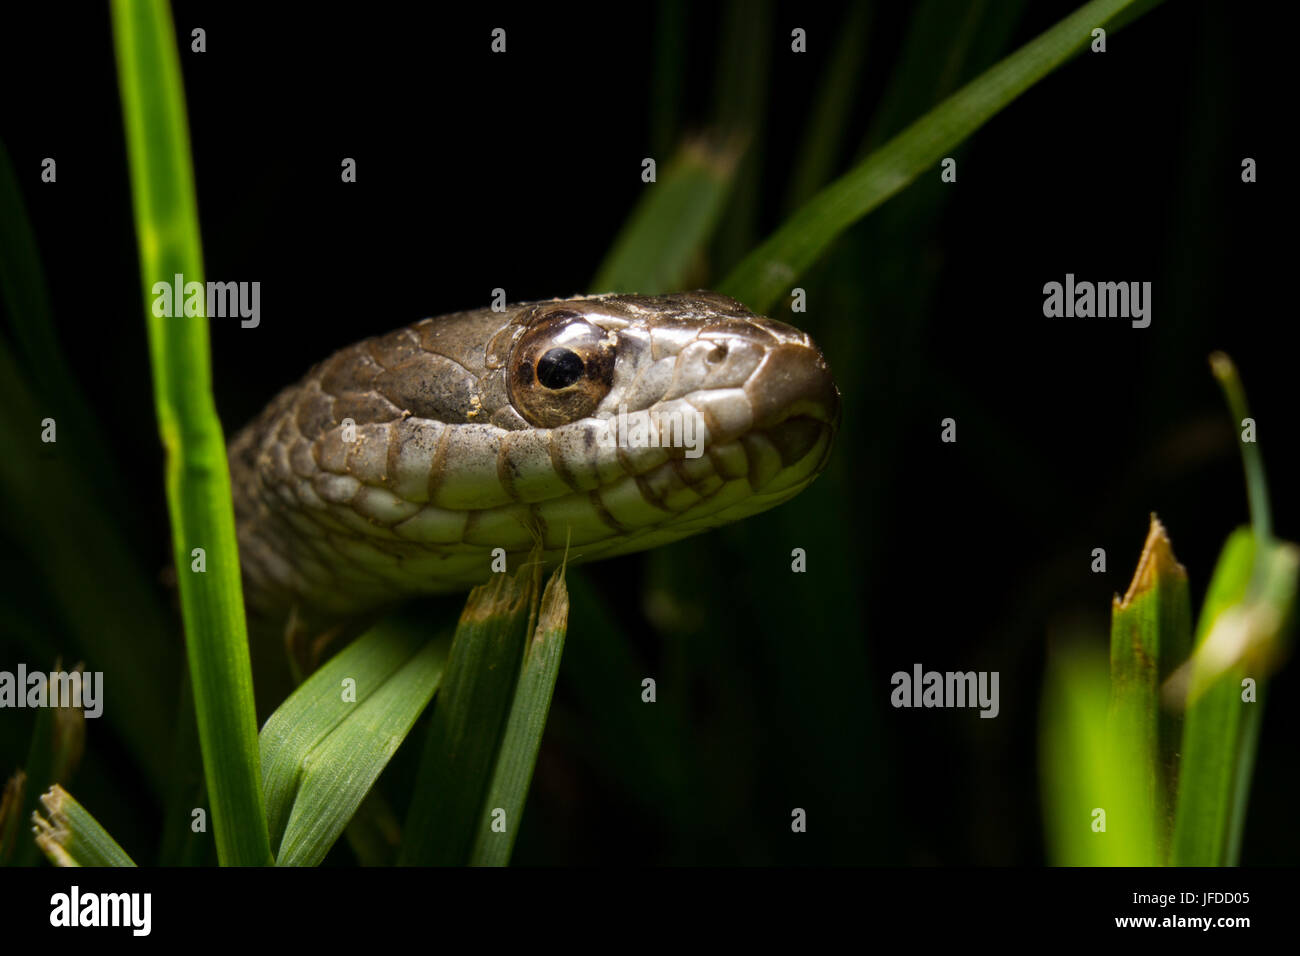 Un pequeño serpientes hace su camino a través de un poco de hierba. Foto de stock